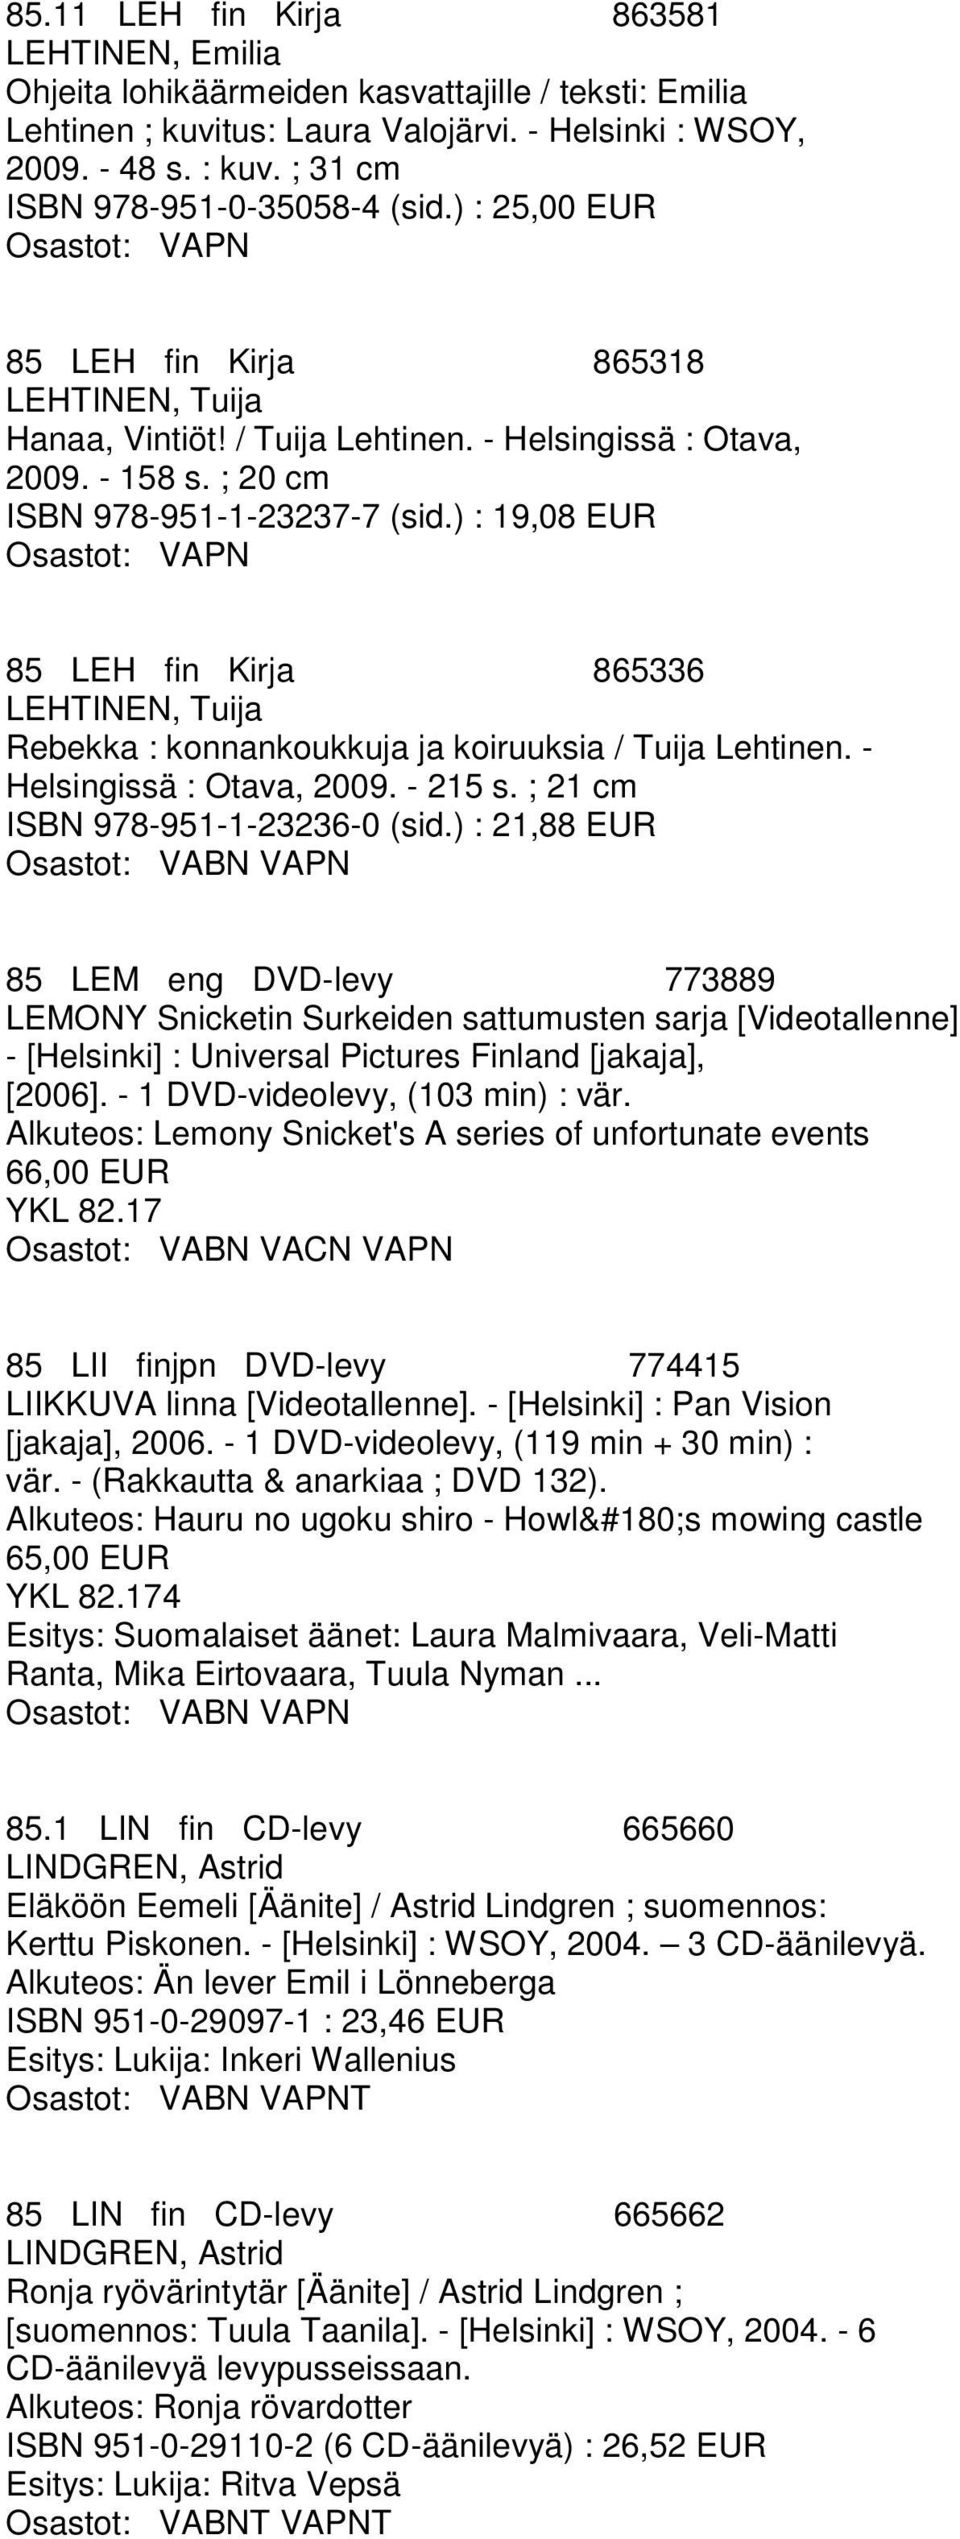 ) : 19,08 EUR 85 LEH fin Kirja 865336 LEHTINEN, Tuija Rebekka : konnankoukkuja ja koiruuksia / Tuija Lehtinen. - Helsingissä : Otava, 2009. - 215 s. ; 21 cm ISBN 978-951-1-23236-0 (sid.